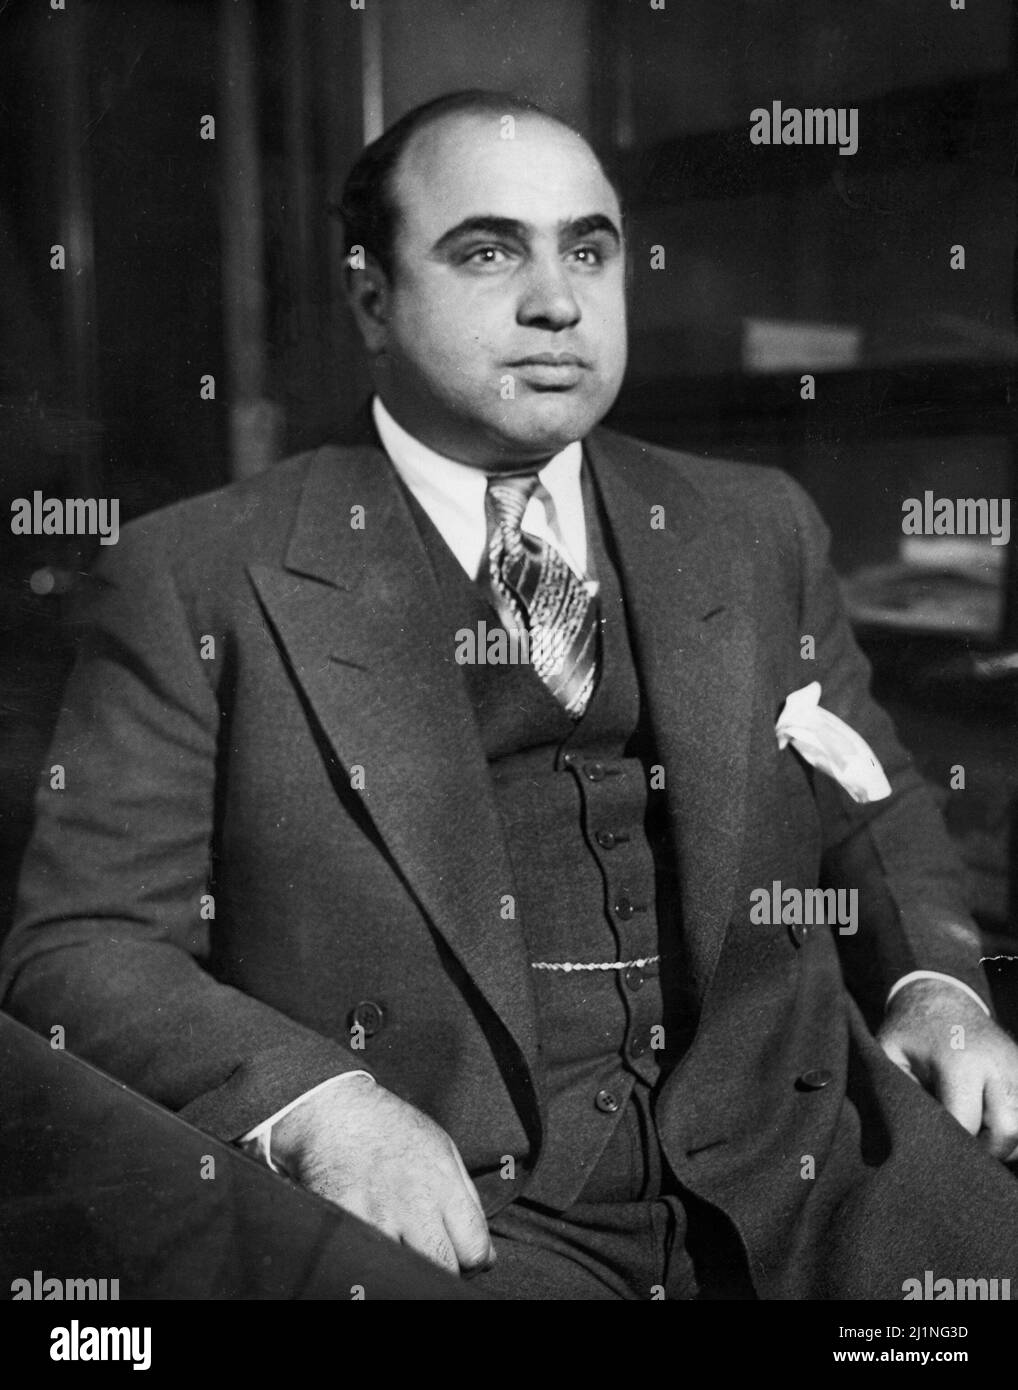 Criminale americano al Capone (1899 - 1947). Il massacro di San Valentino ha cementato il suo controllo sugli underworld di Chicago. 1930. Foto Stock